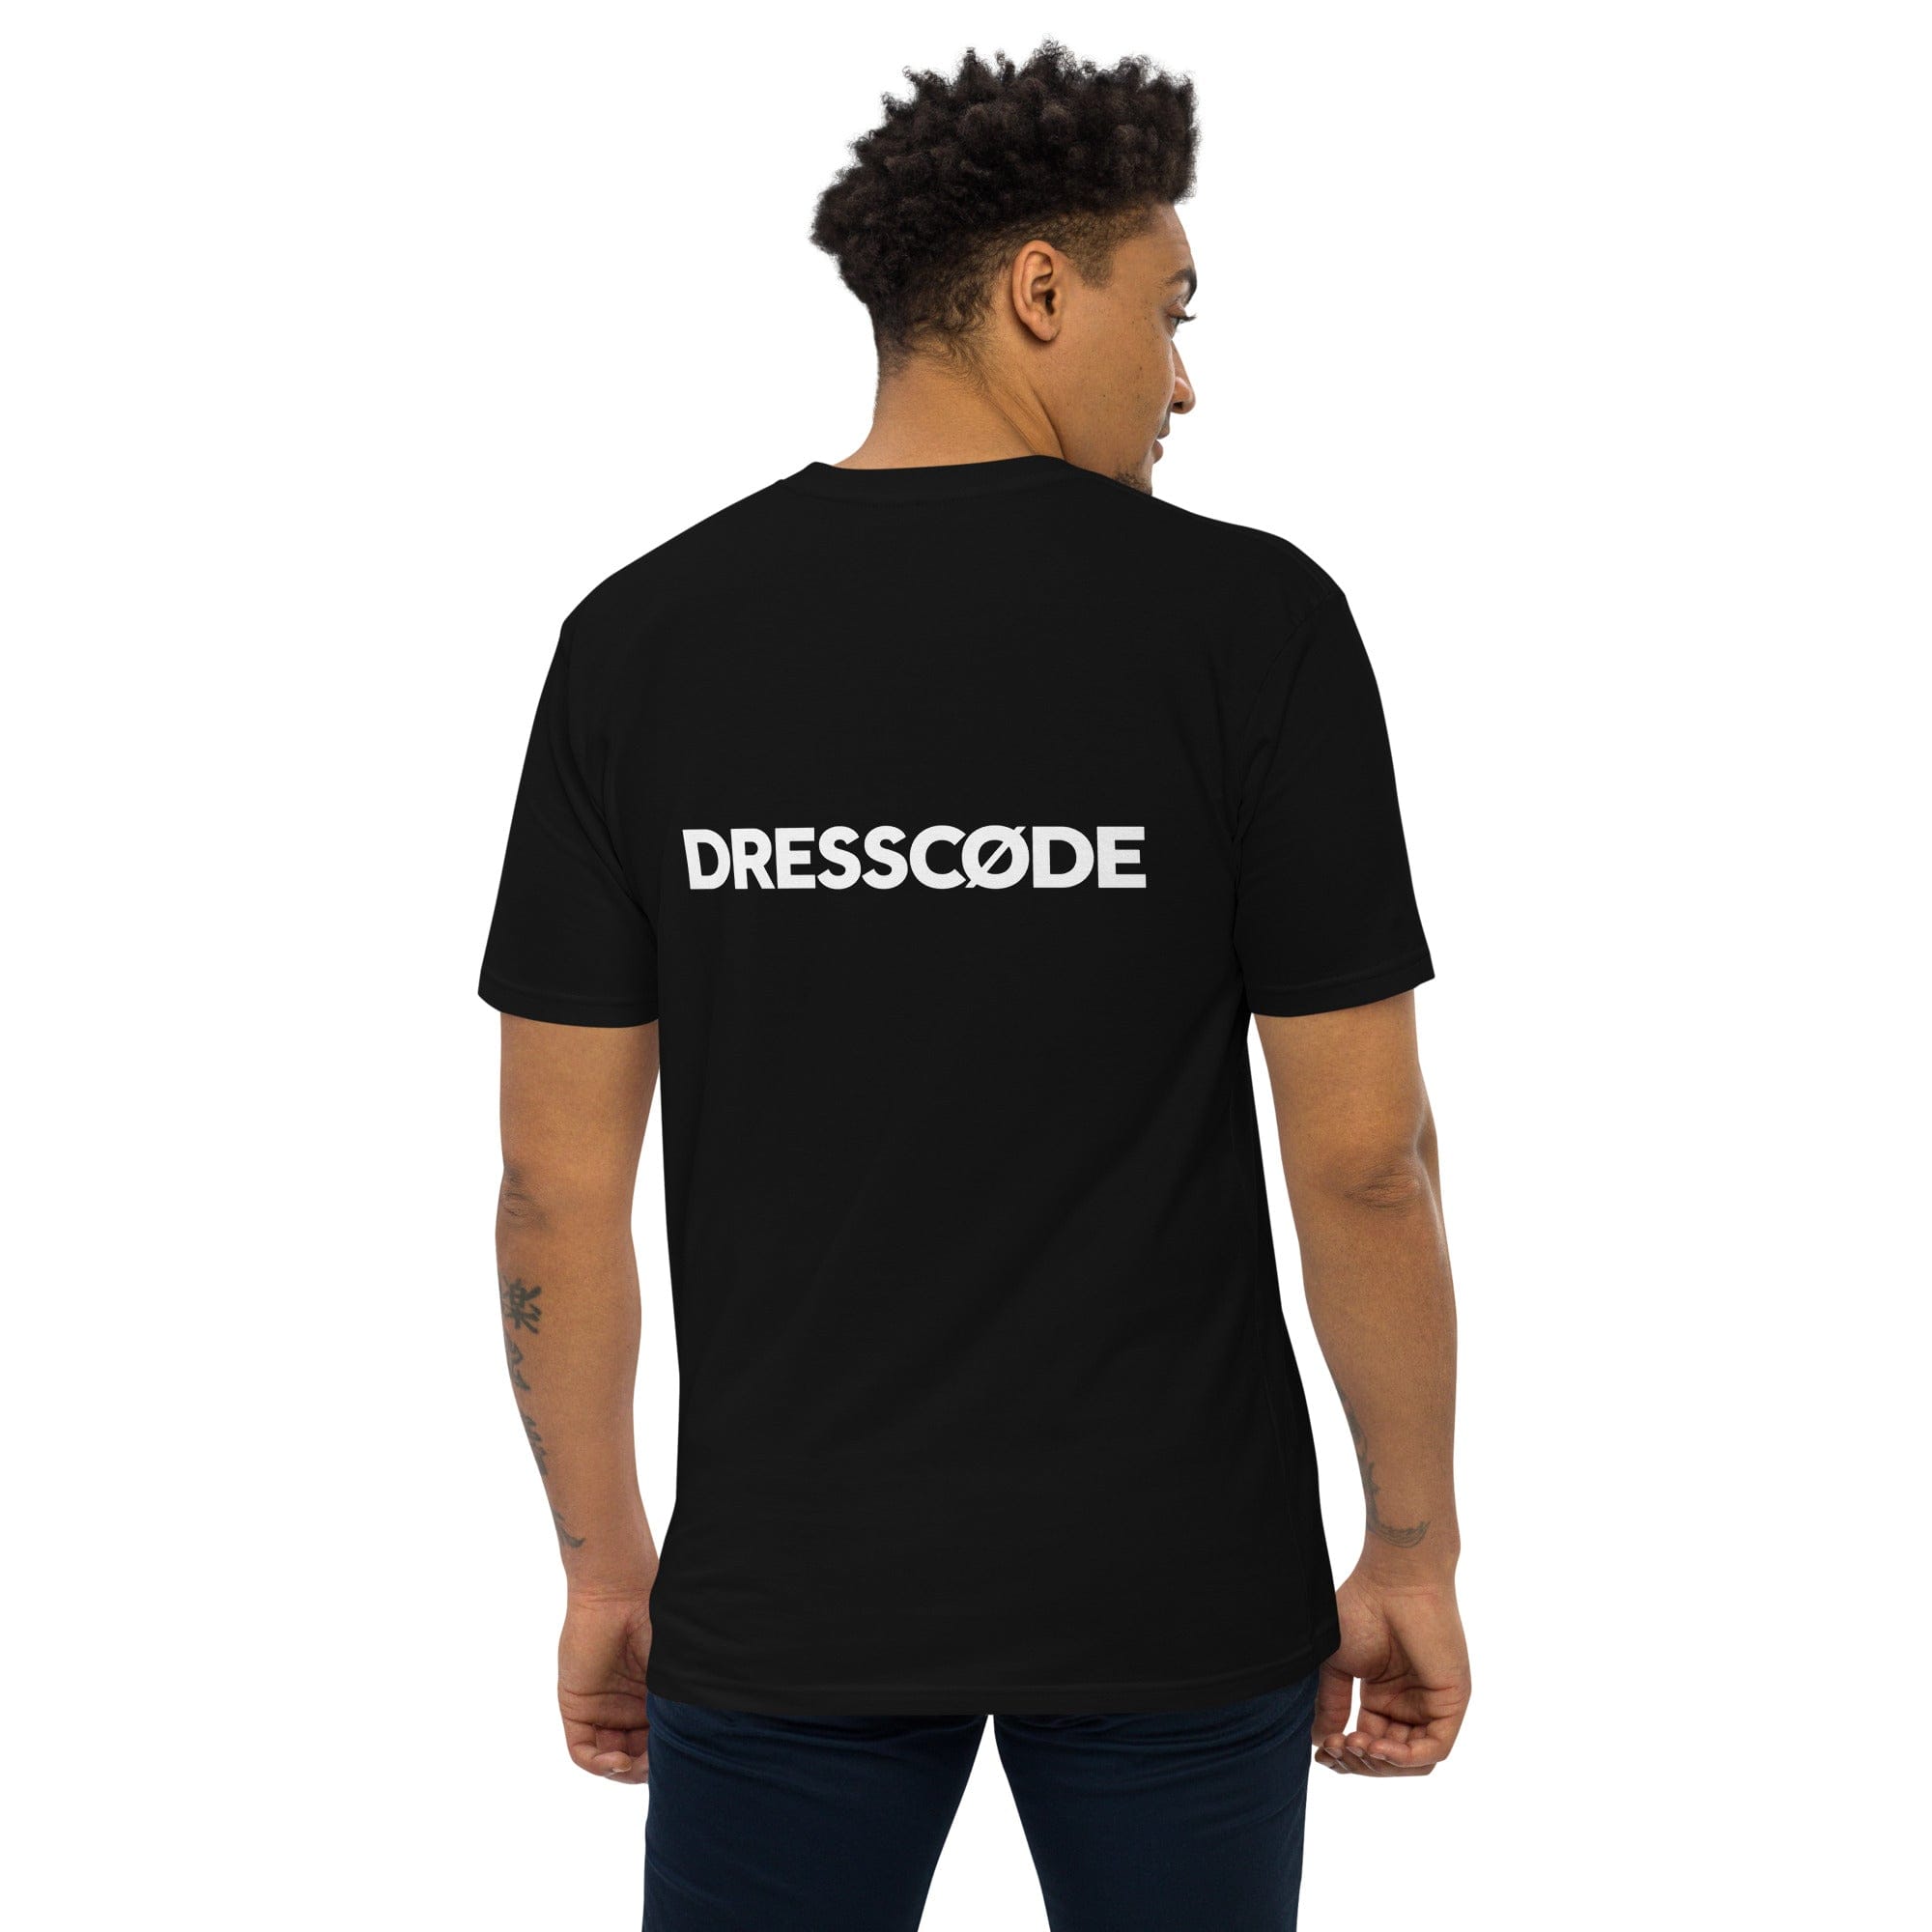 DRESSCODE T-Shirt Dream Sequence 1